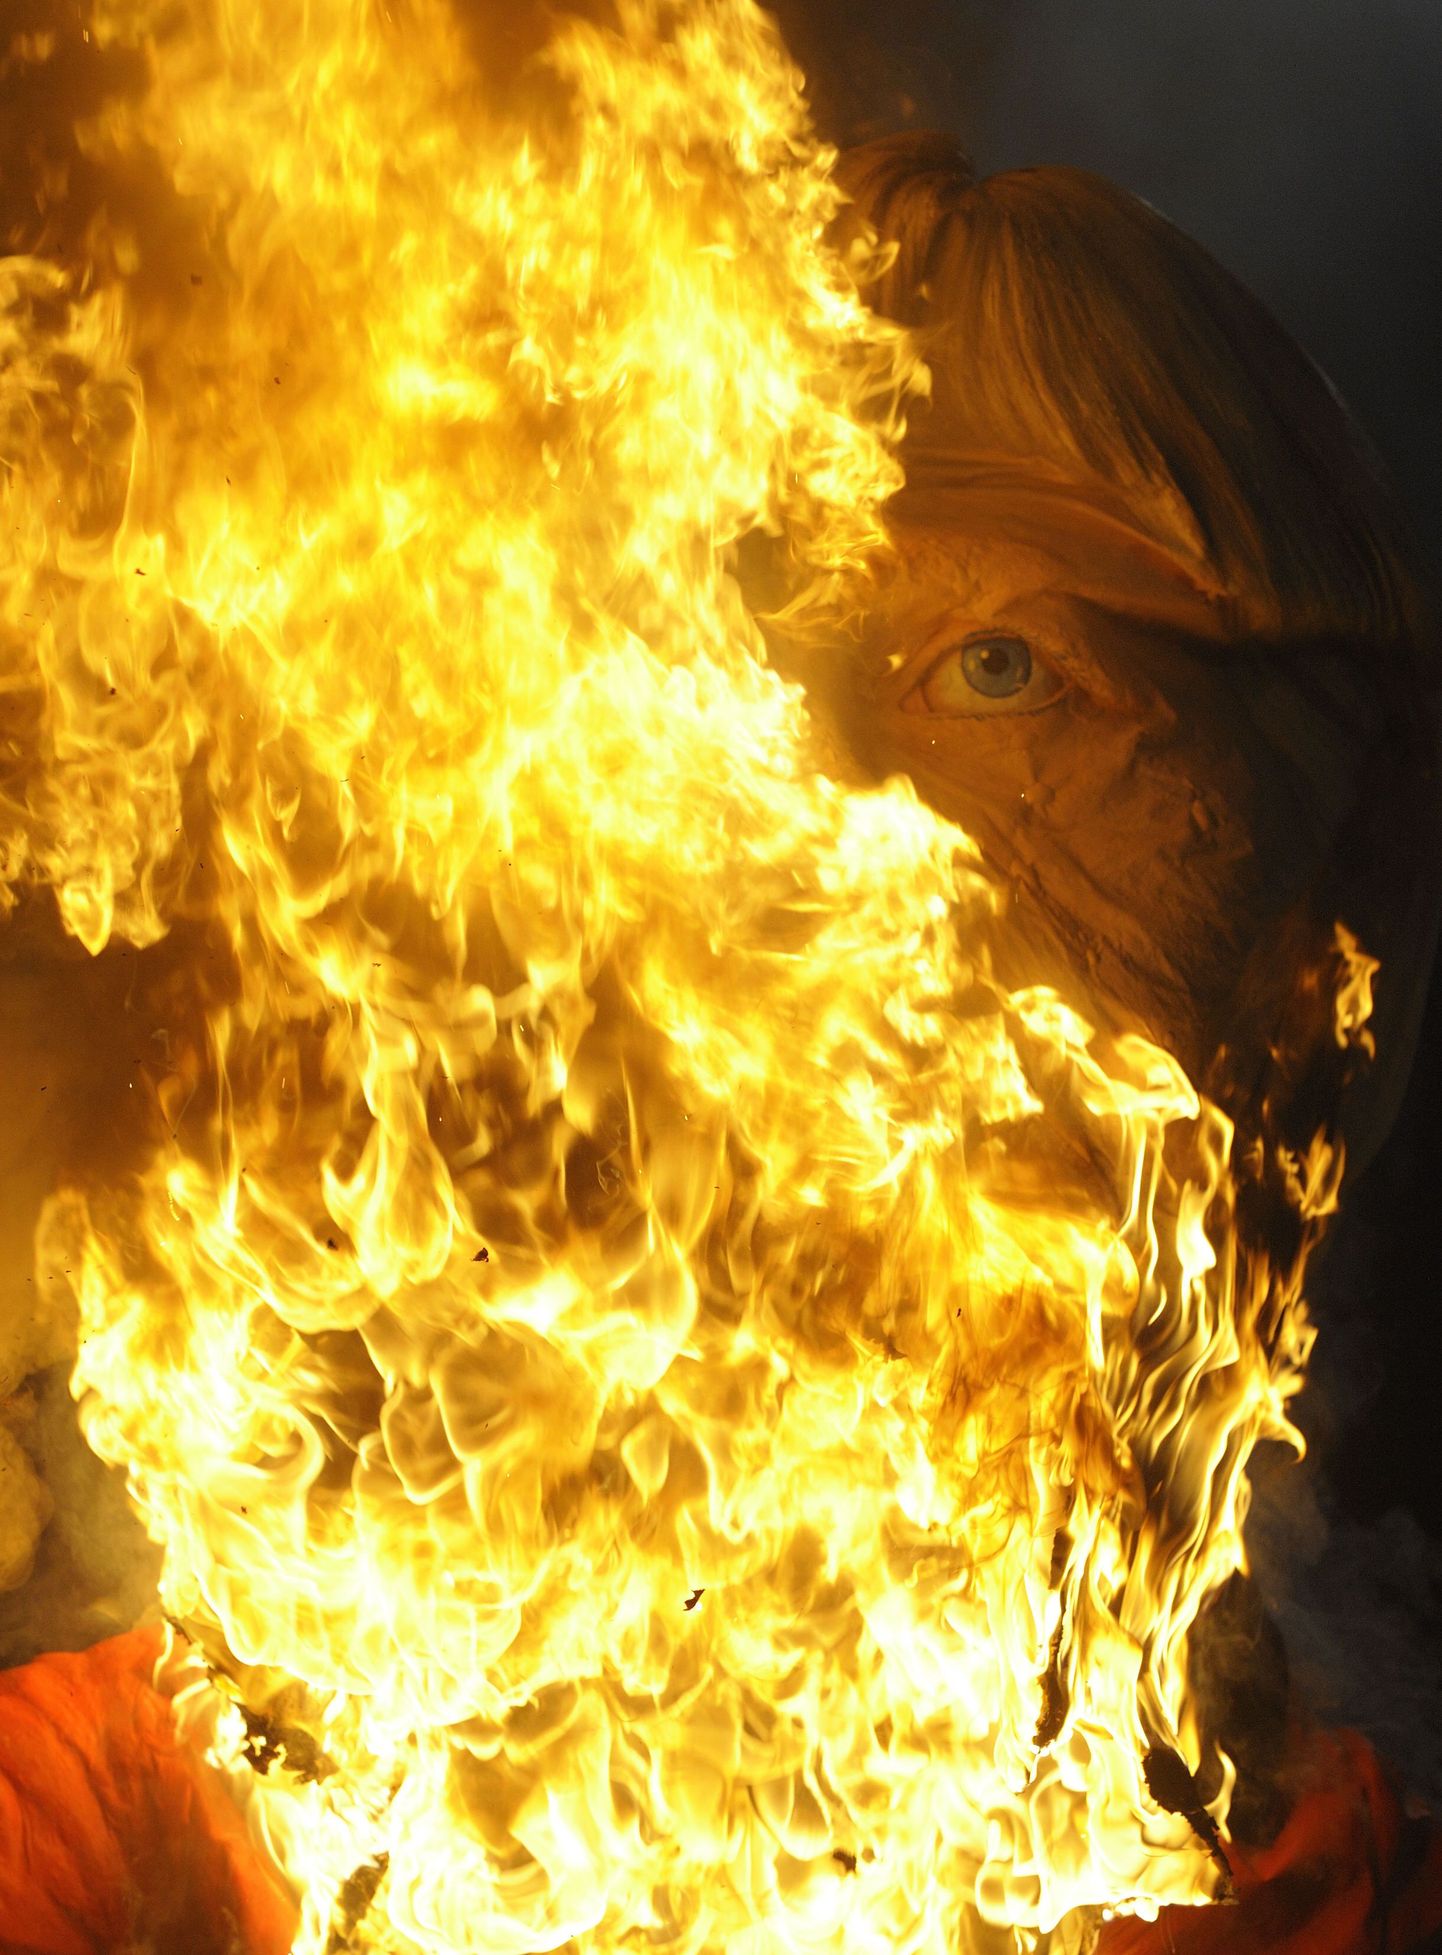 Nõiaks peetud naine põletati elusalt